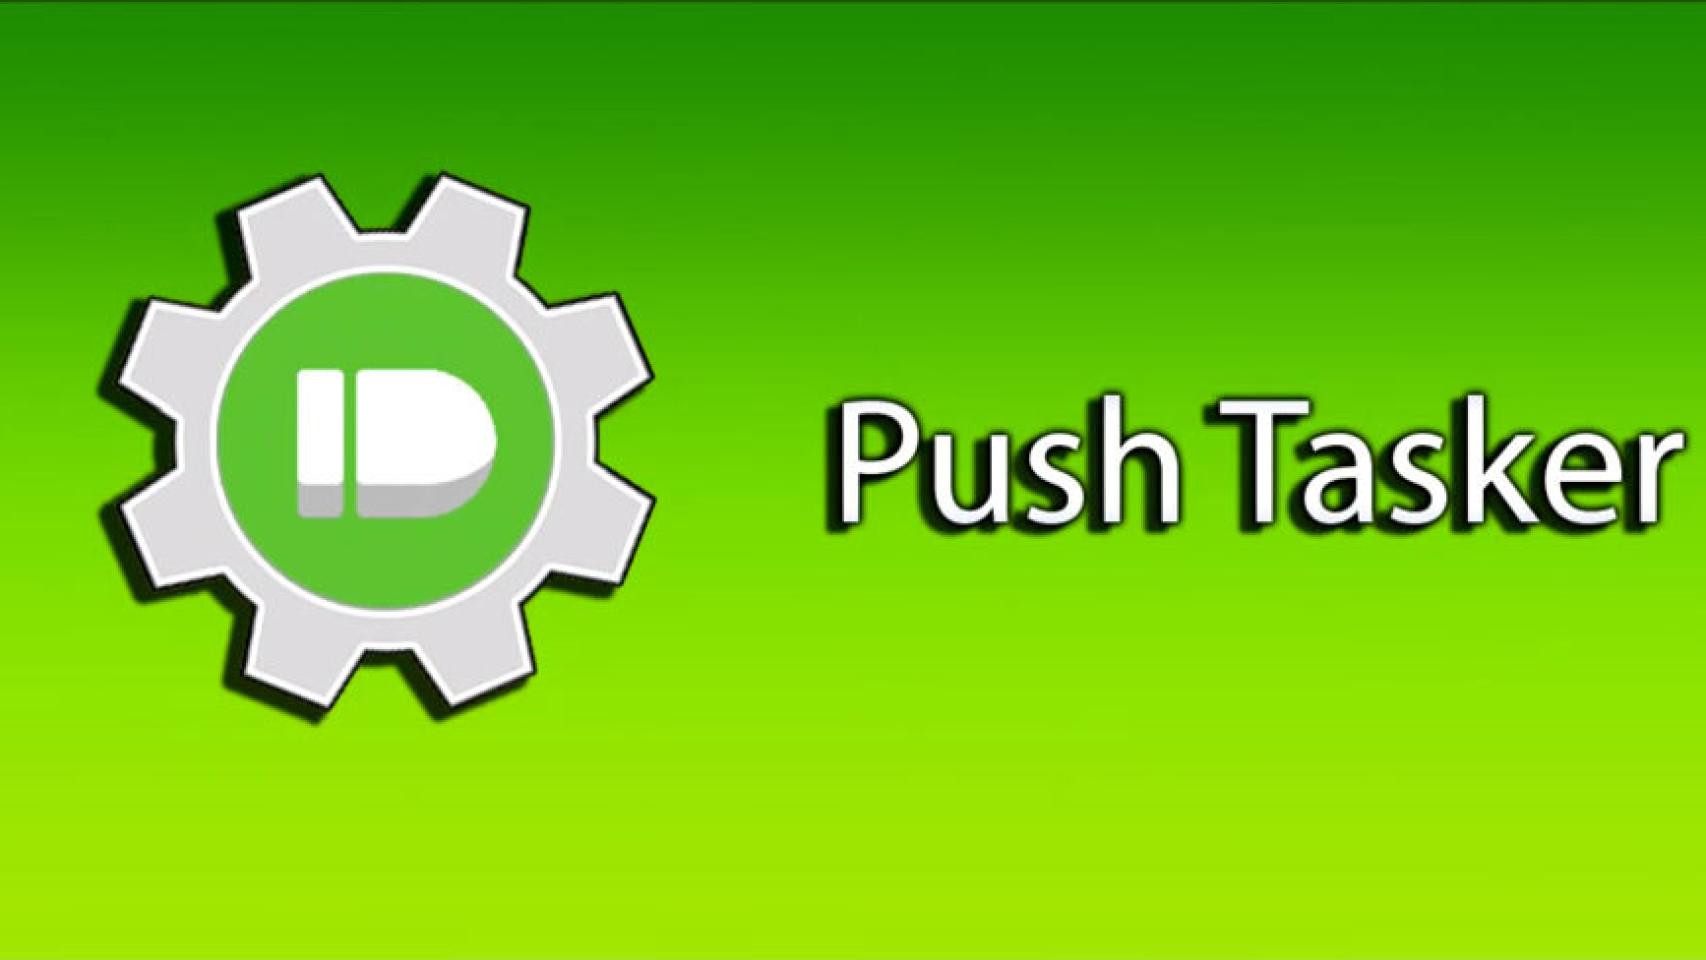 Push Tasker, combinando lo mejor de Pushbullet y Tasker